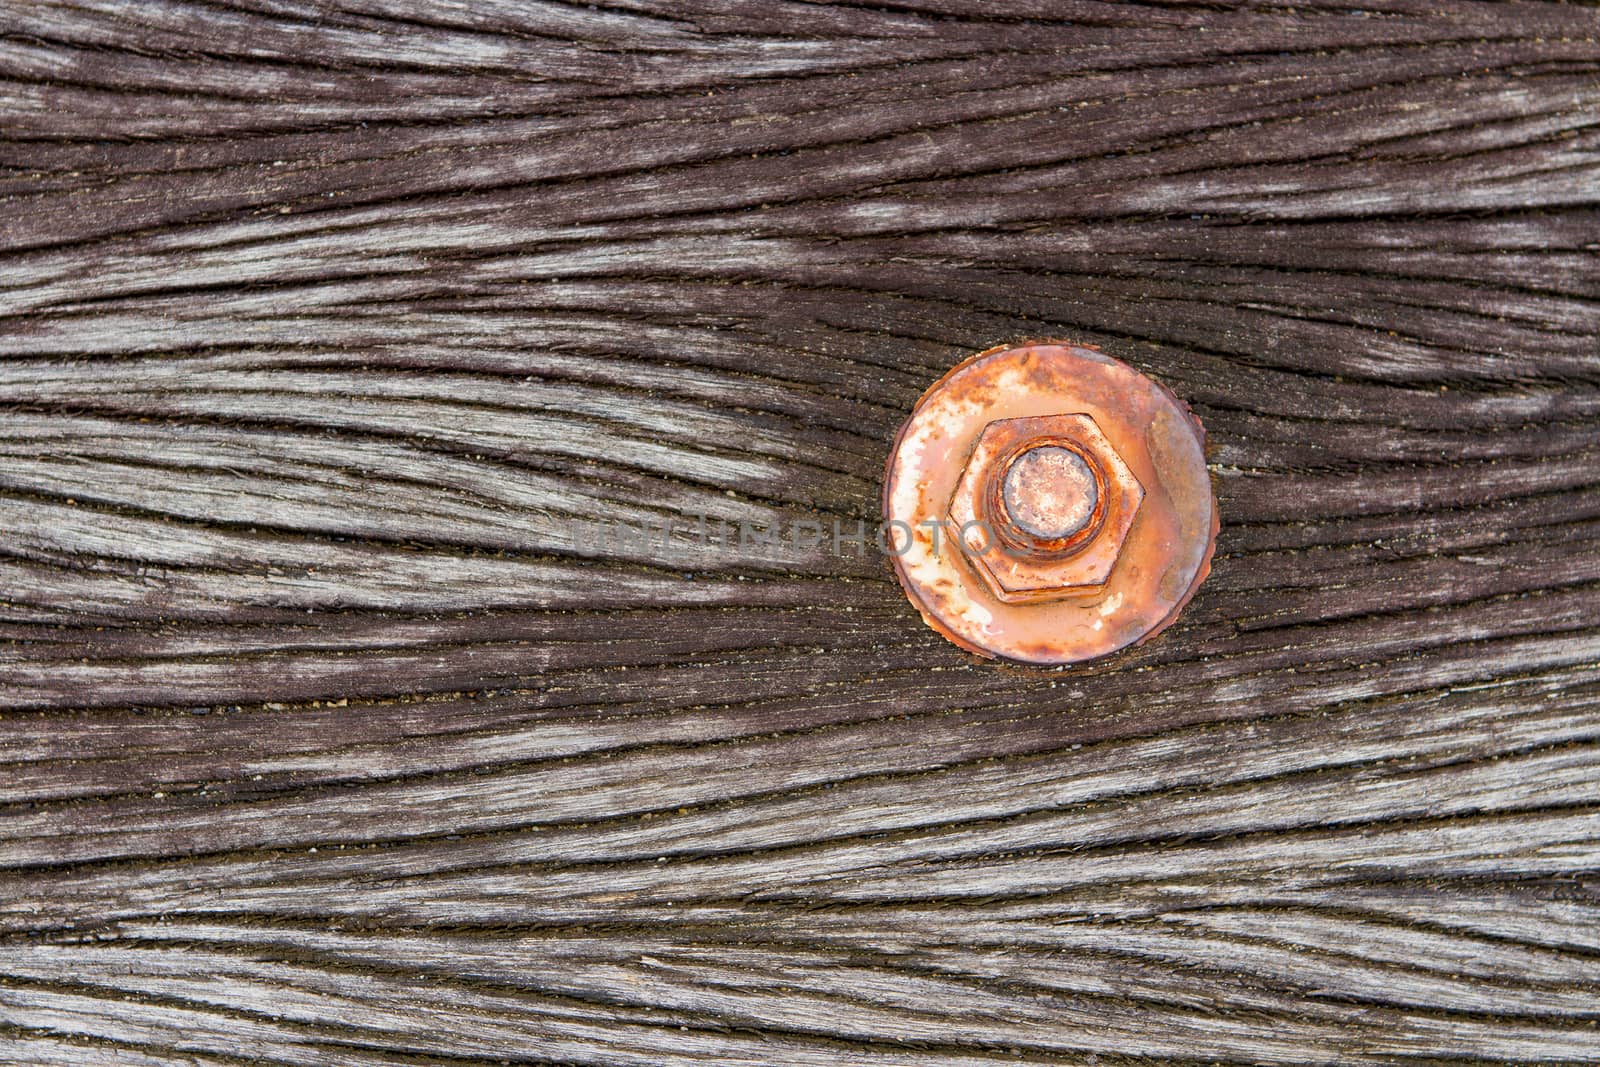 The nut is rust on old wood floor.